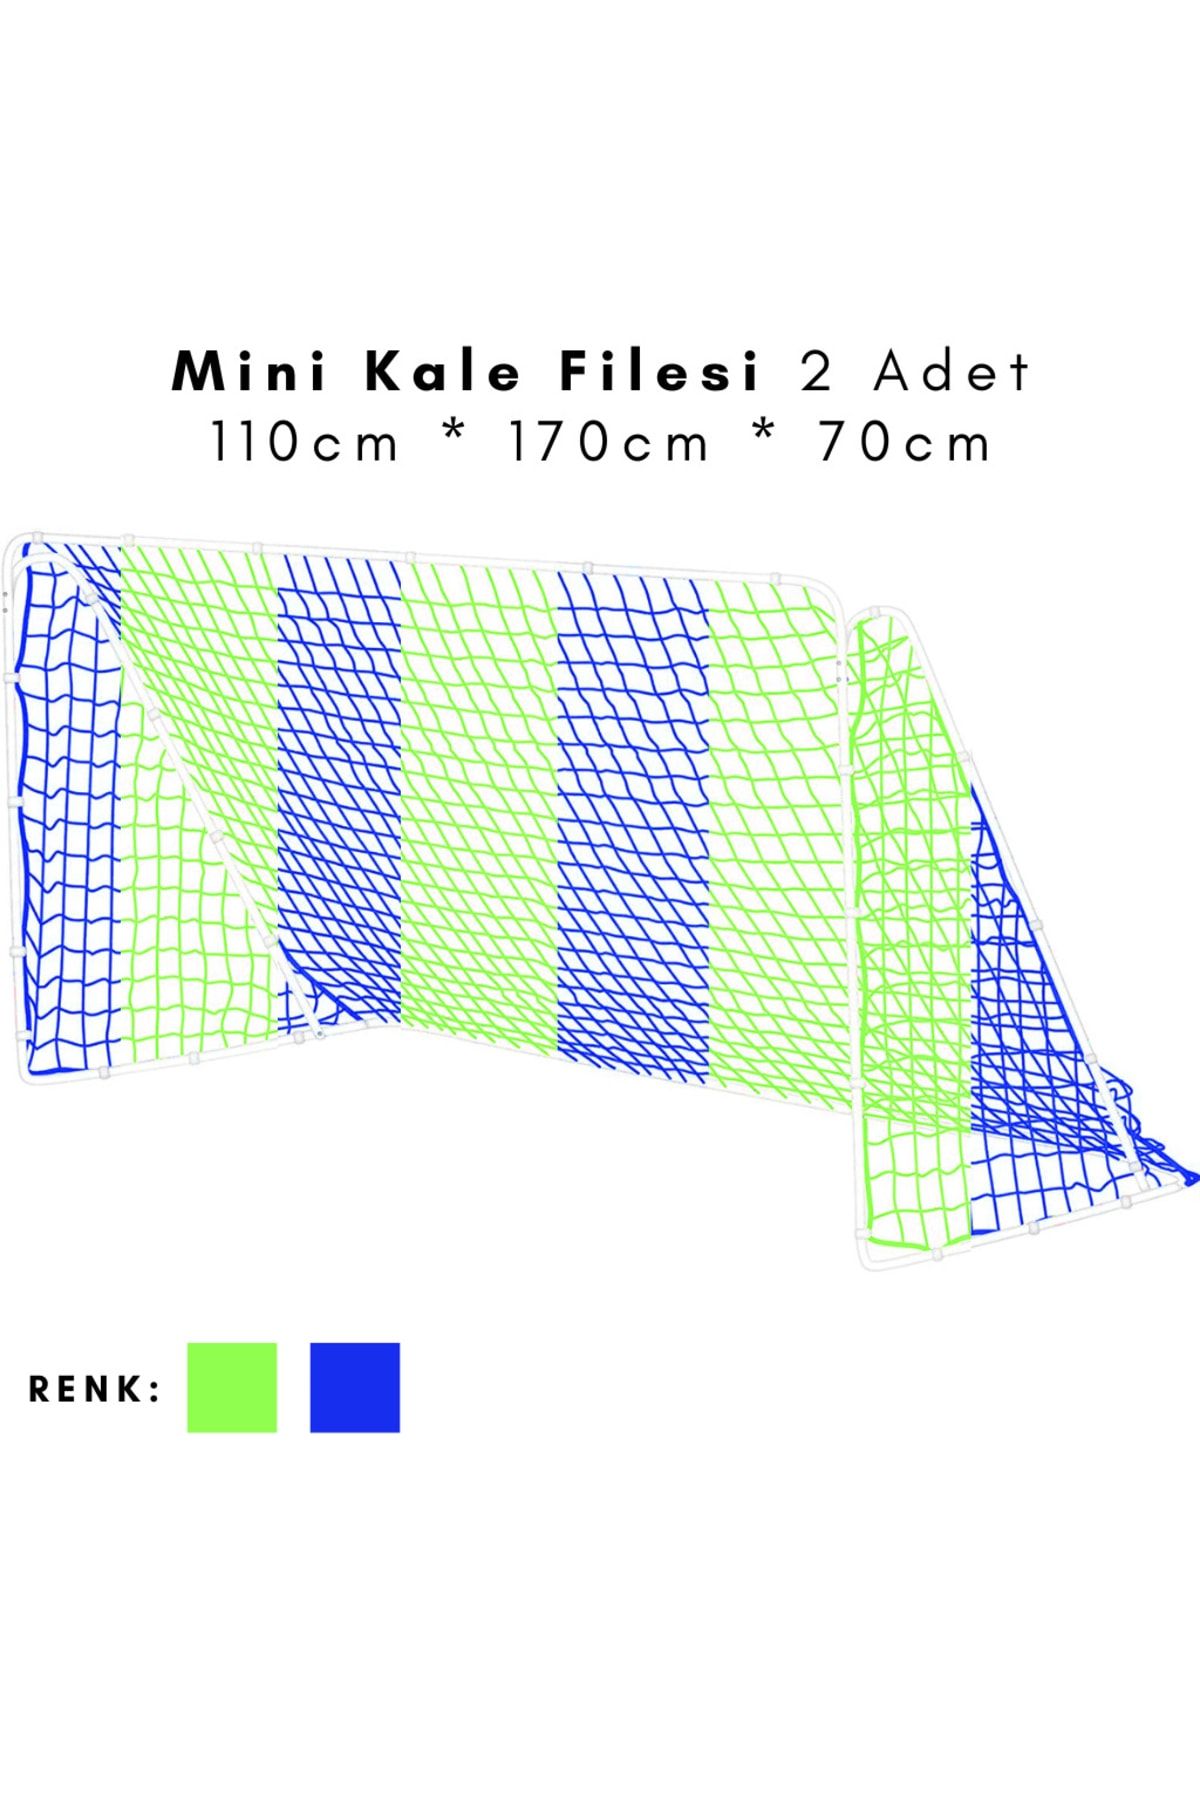 ÖZBEK Minyatür Kale Filesi - Mini Kale Ağı 110 * 170 * 70cm (2 Adet File)